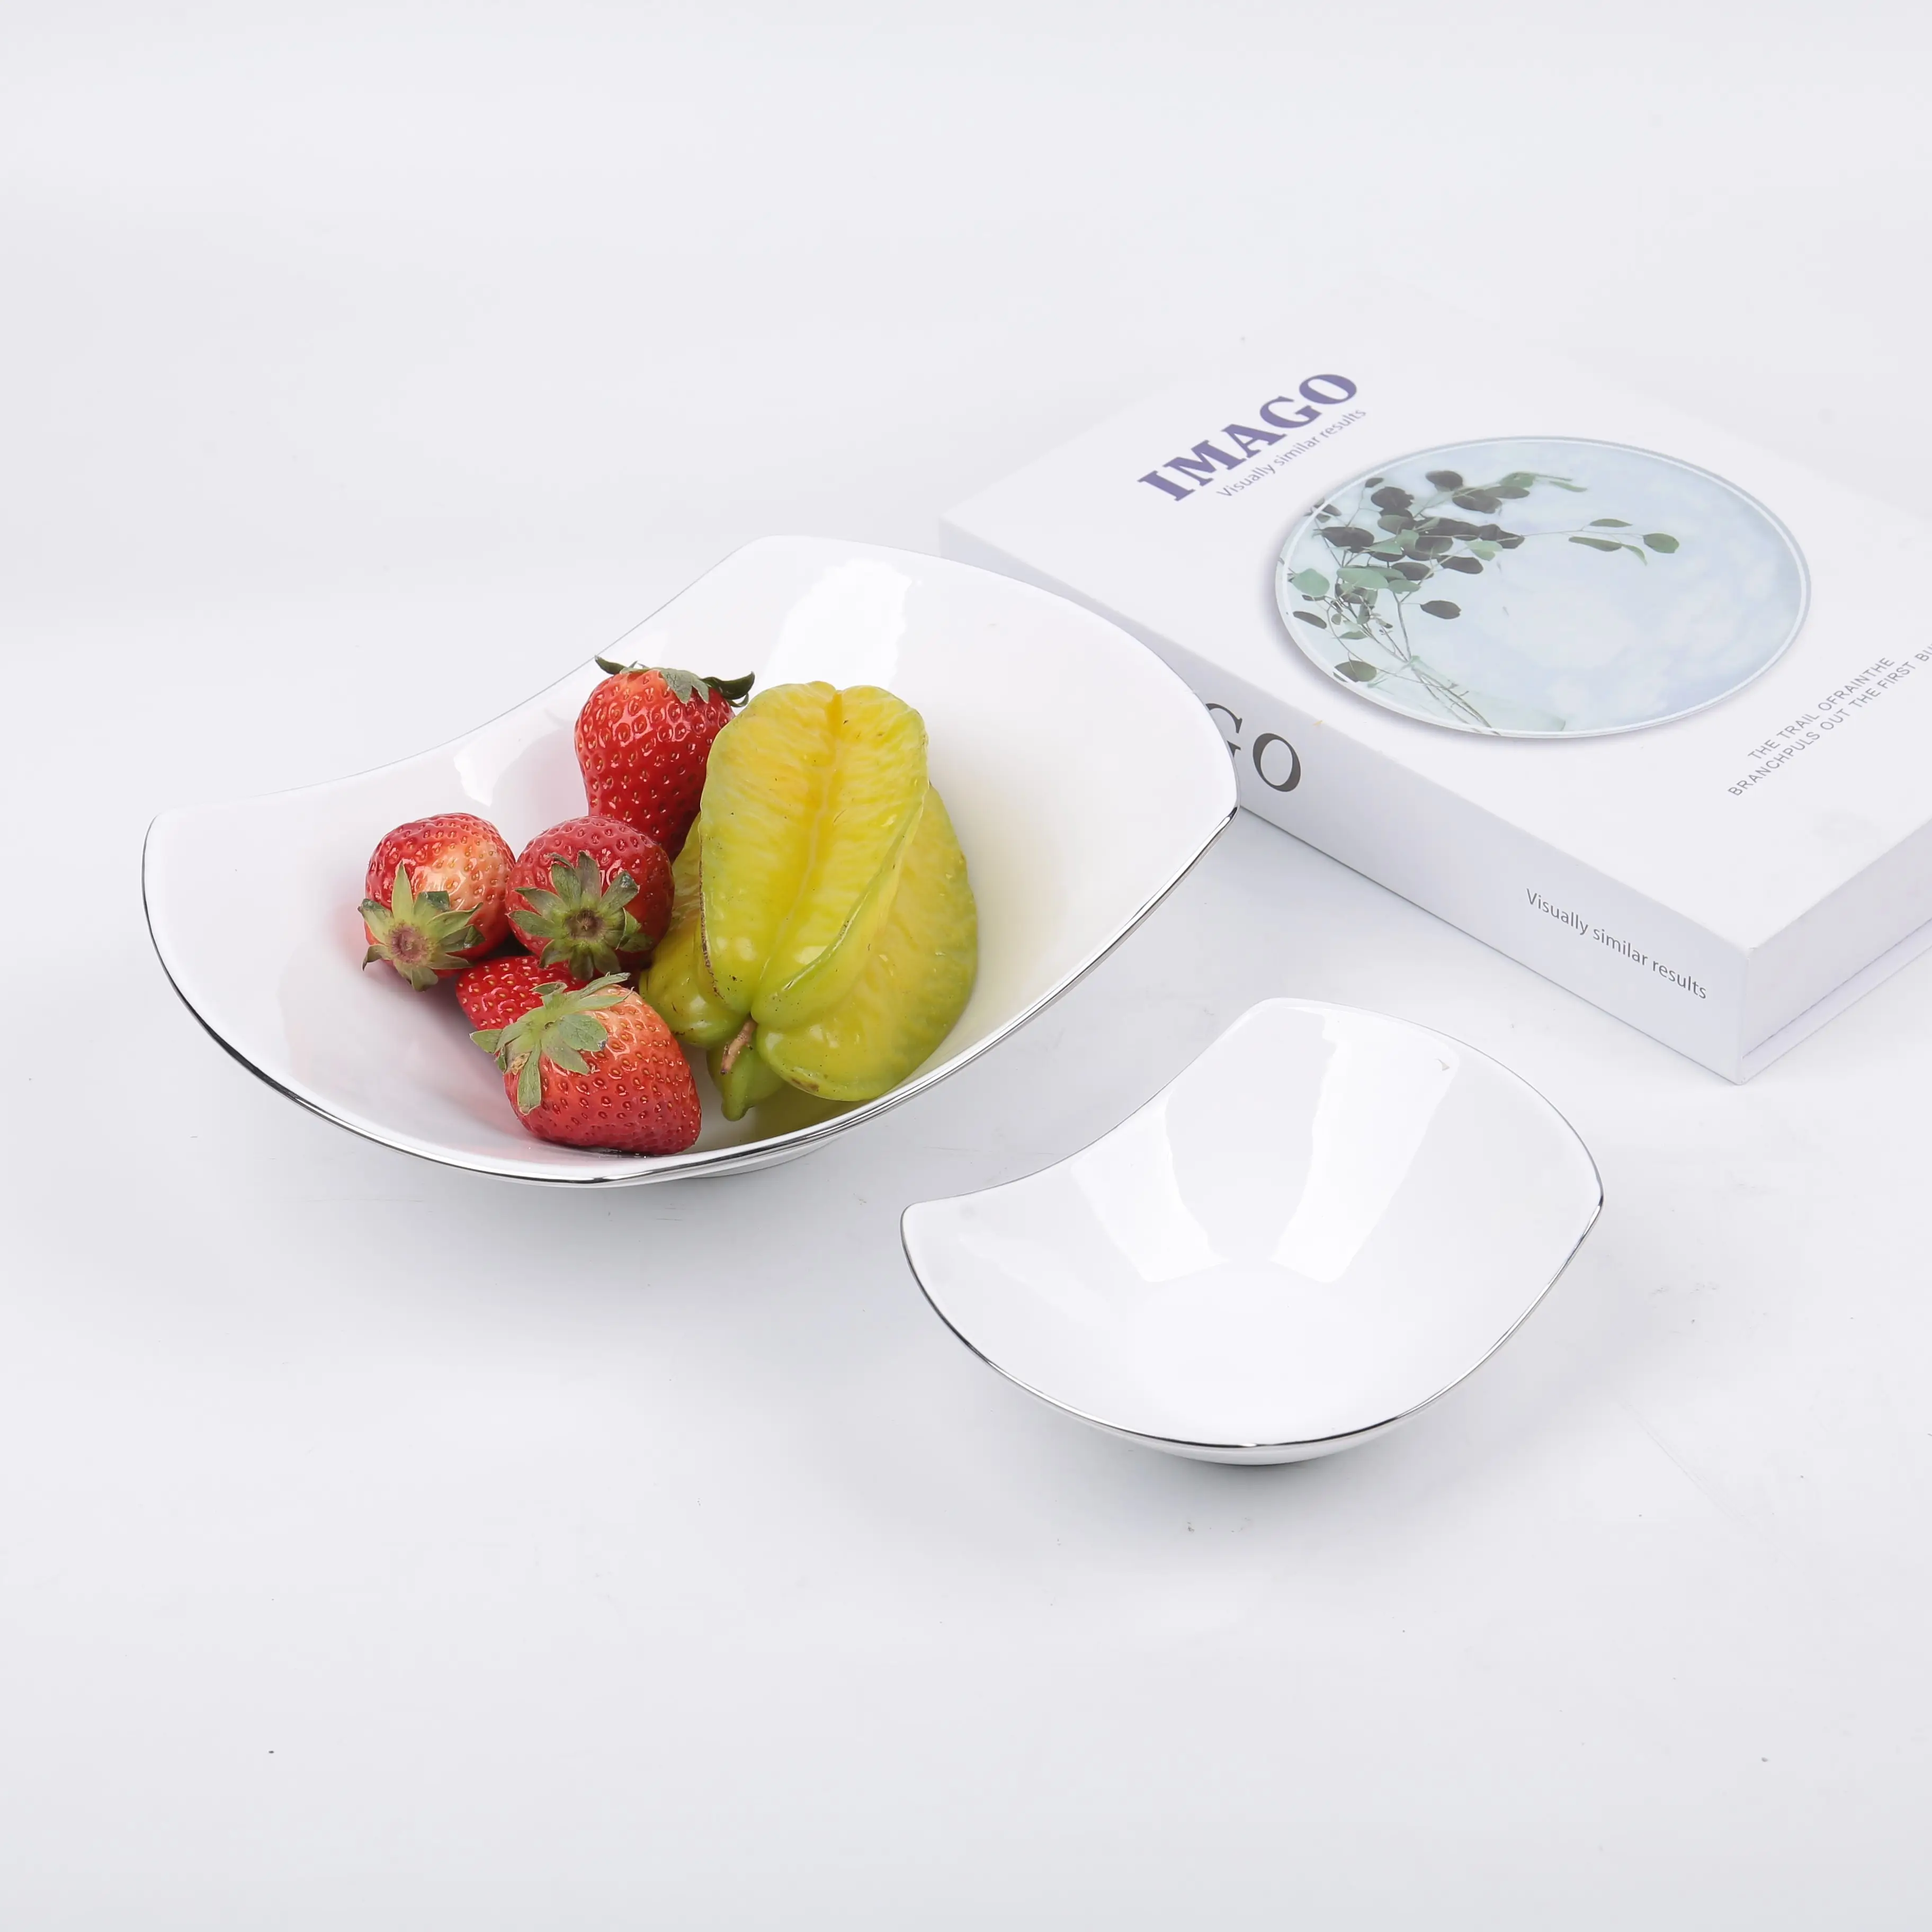 Европейский стиль, простые домашние блюда для свадебного ужина, белая керамическая тарелка для закусок, фруктовая миска, новый дизайн